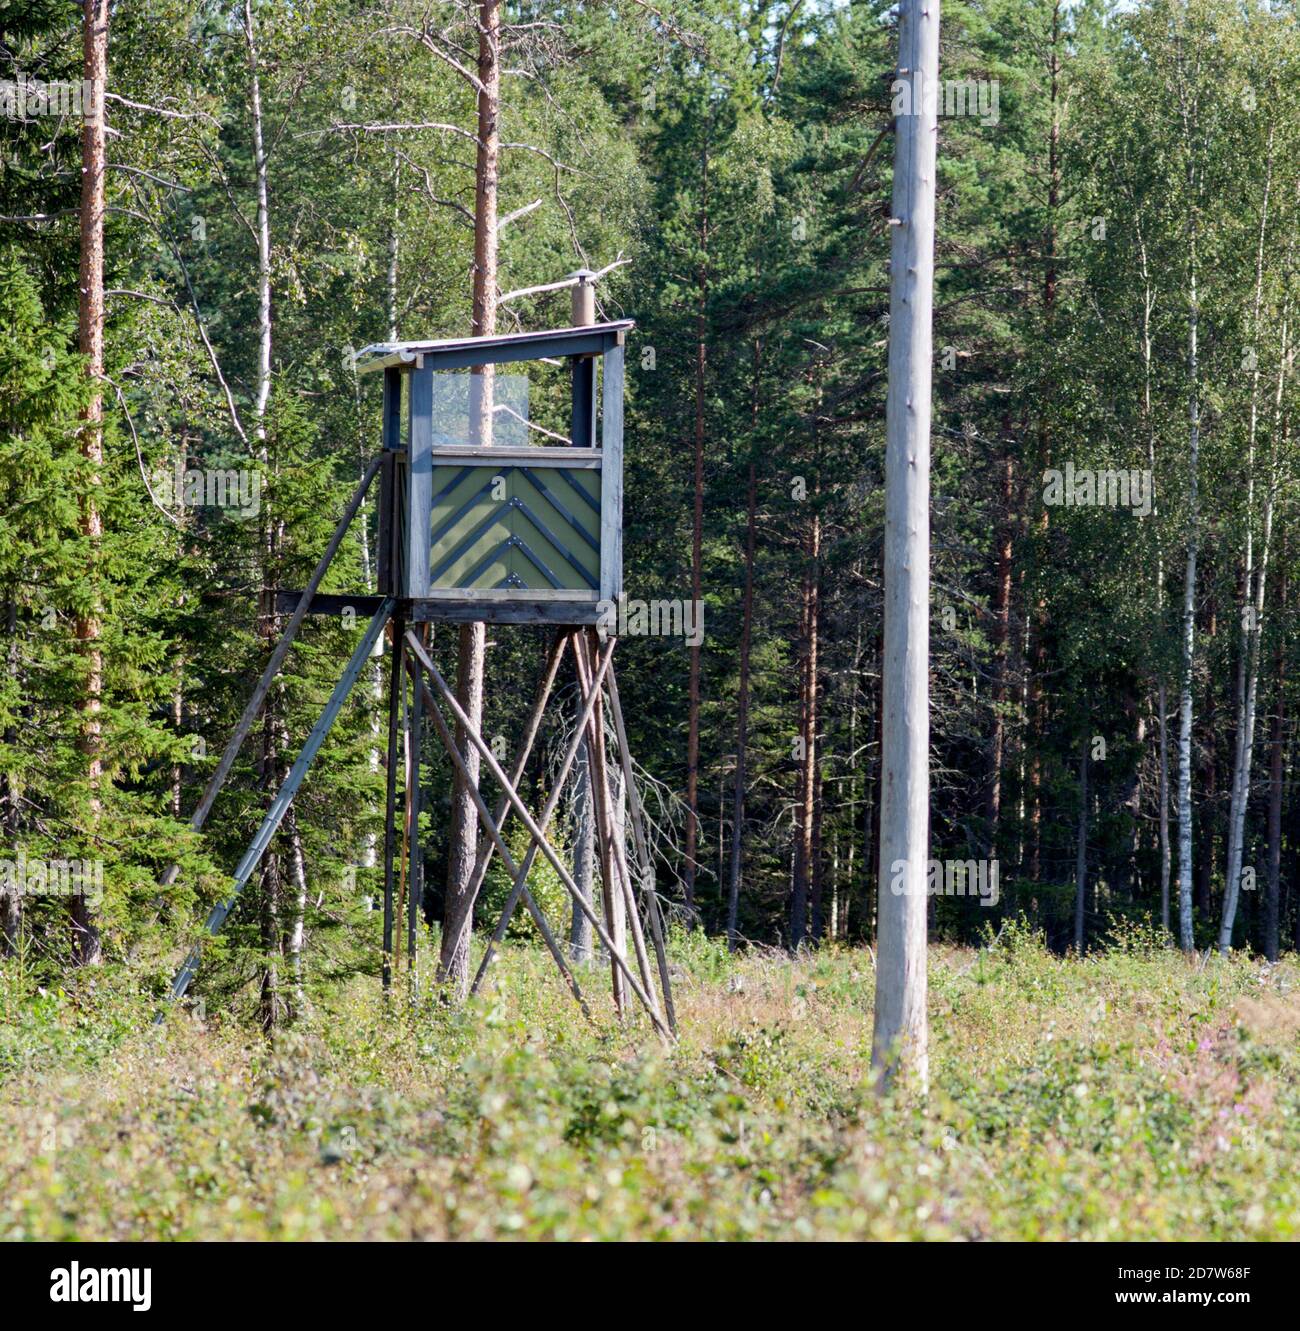 Jagdturm in einem Wald. Elche, Elche im September, Oktober ist das Hauptthema in diesem Bereich. Stockfoto